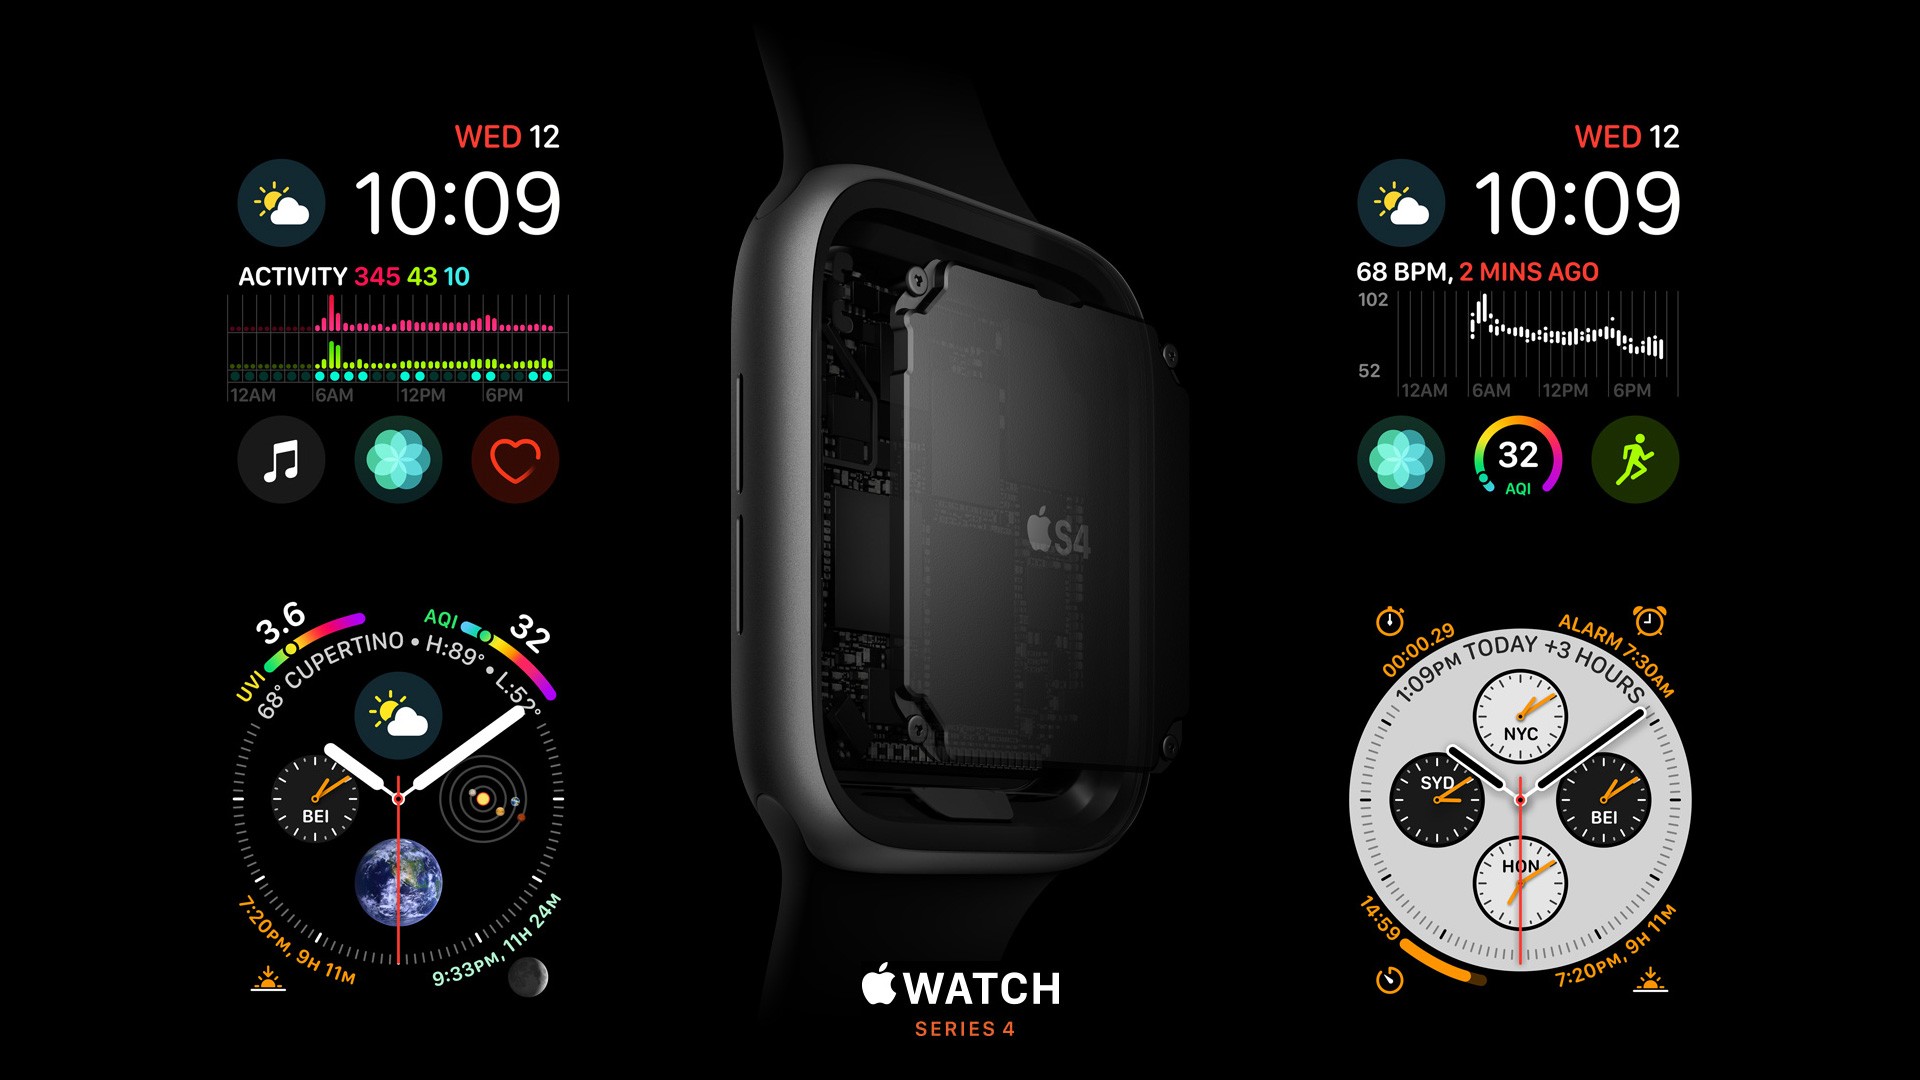 orologio apple wallpaper hd,aggeggio,tecnologia,font,dispositivo di comunicazione,immagine dello schermo